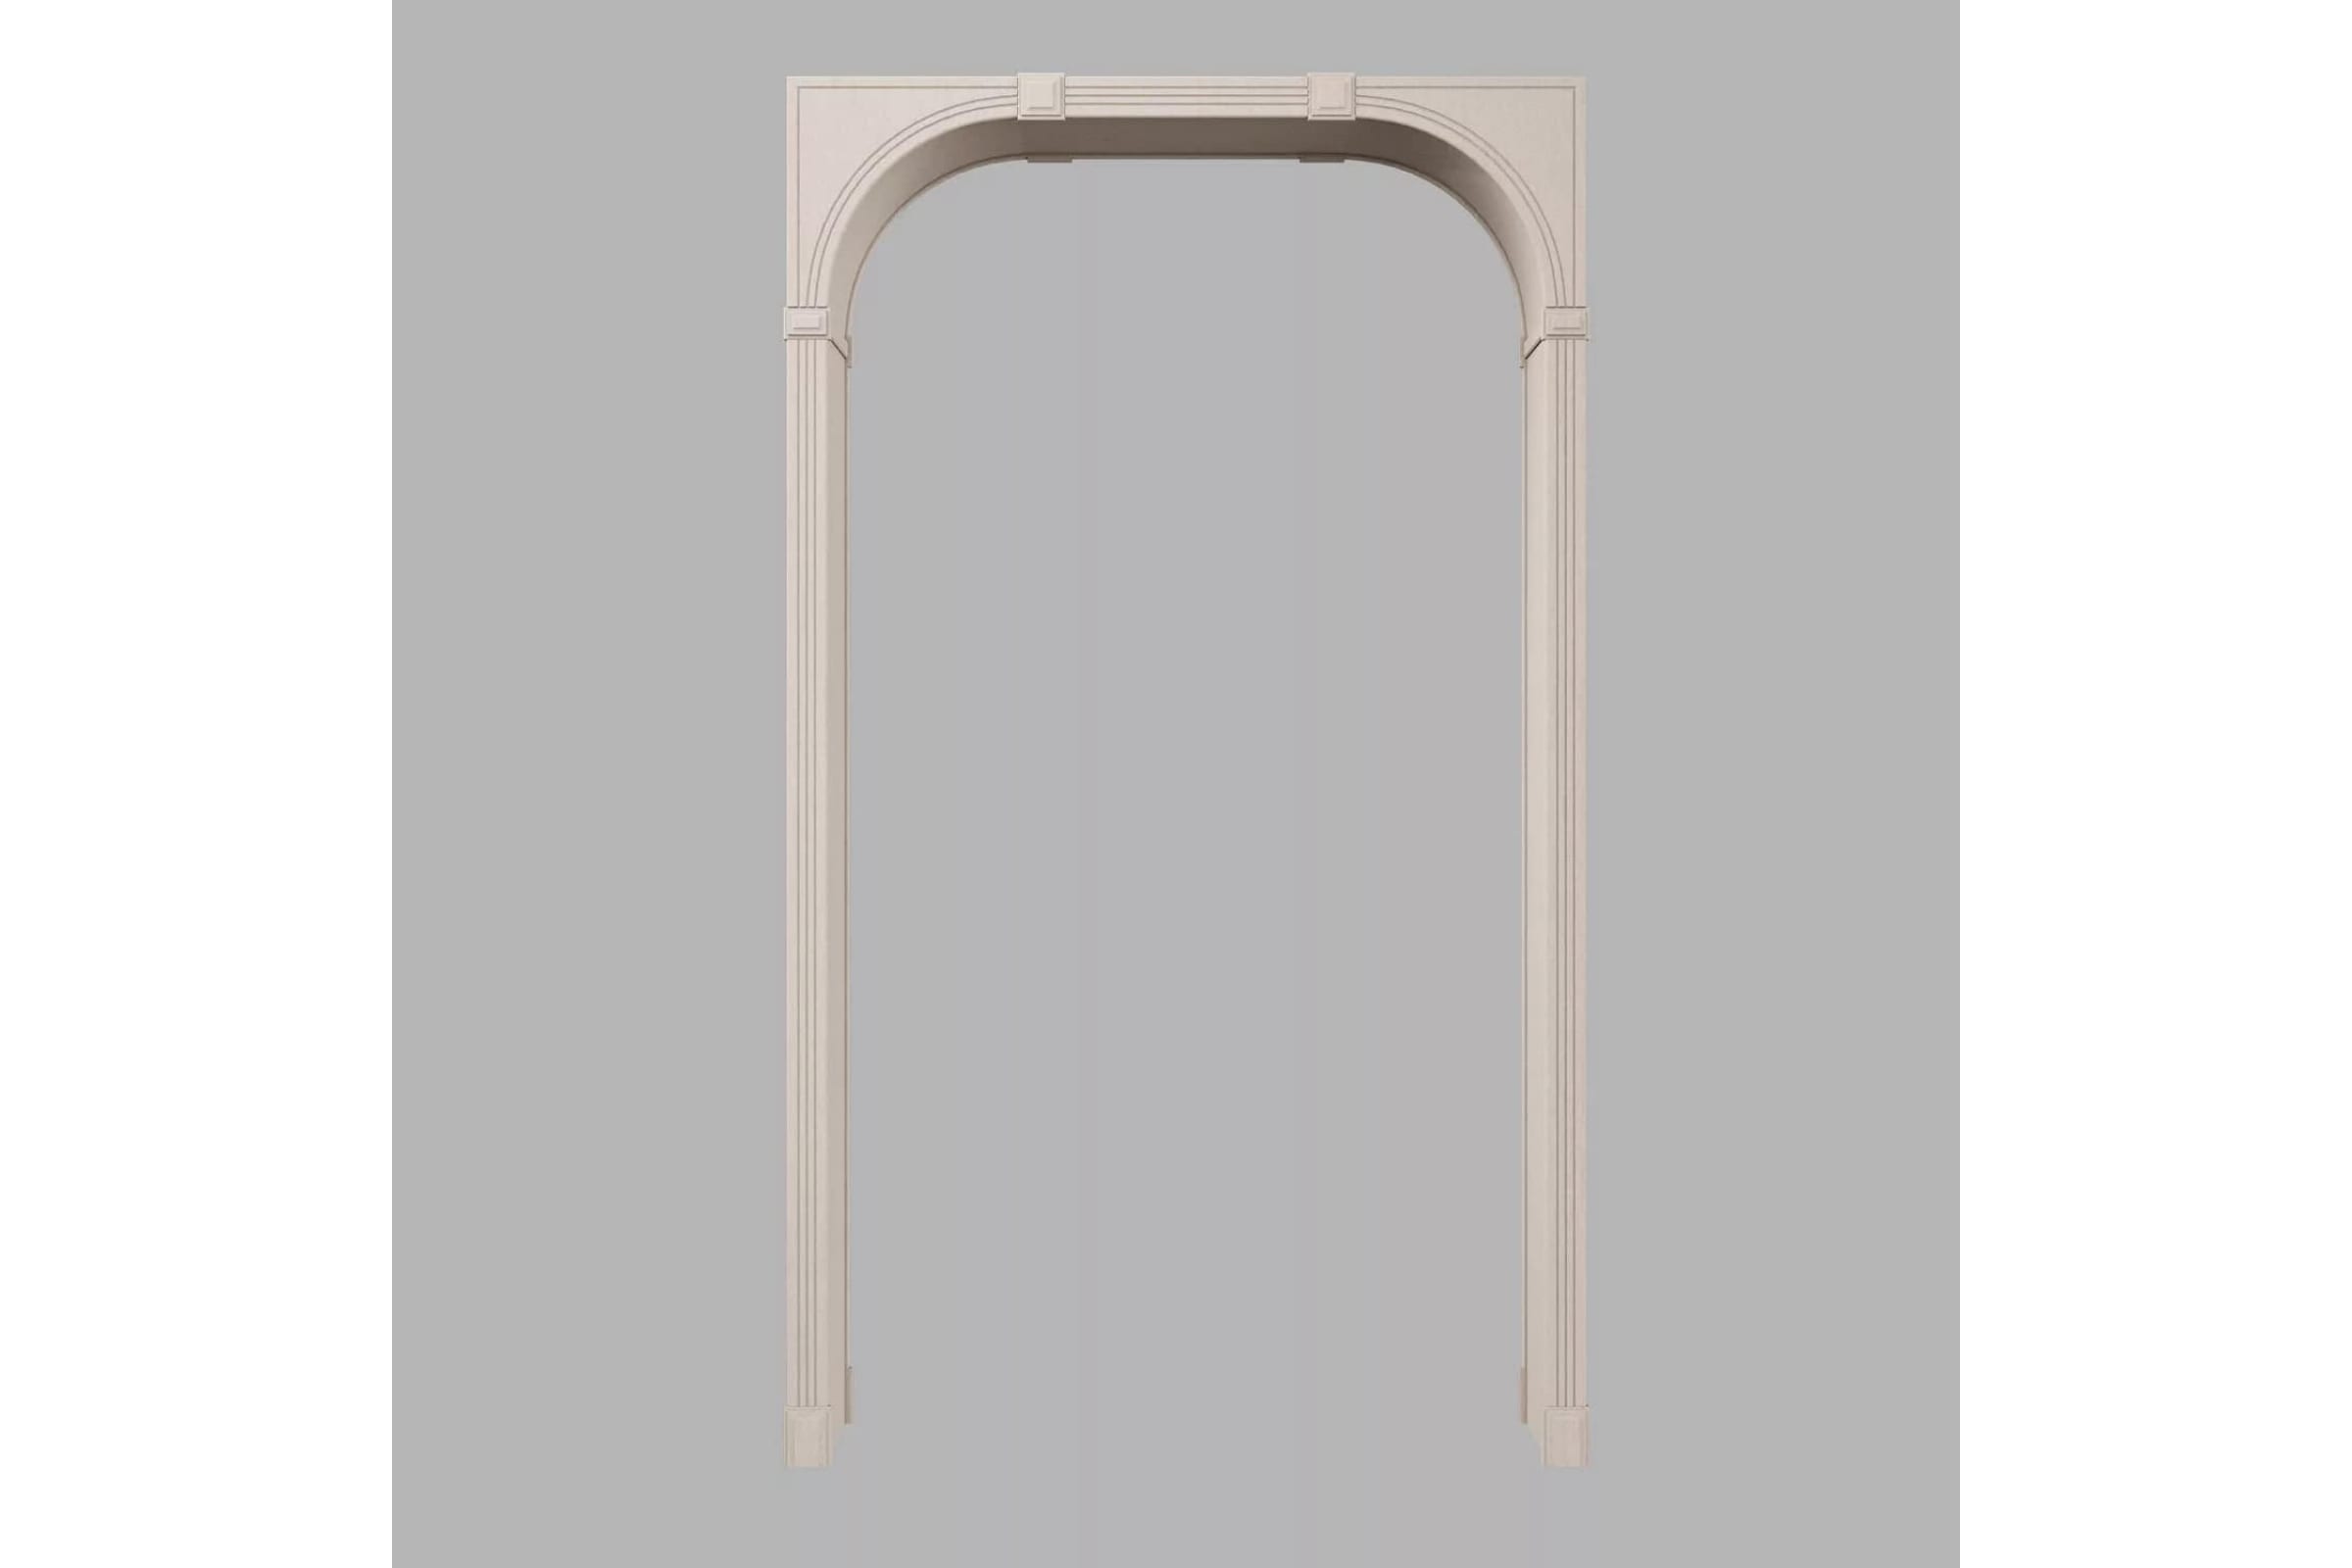 фото Cosca decor , арка симплекс, рено малая, мдф 10 мм, набор, без отделки спб024809